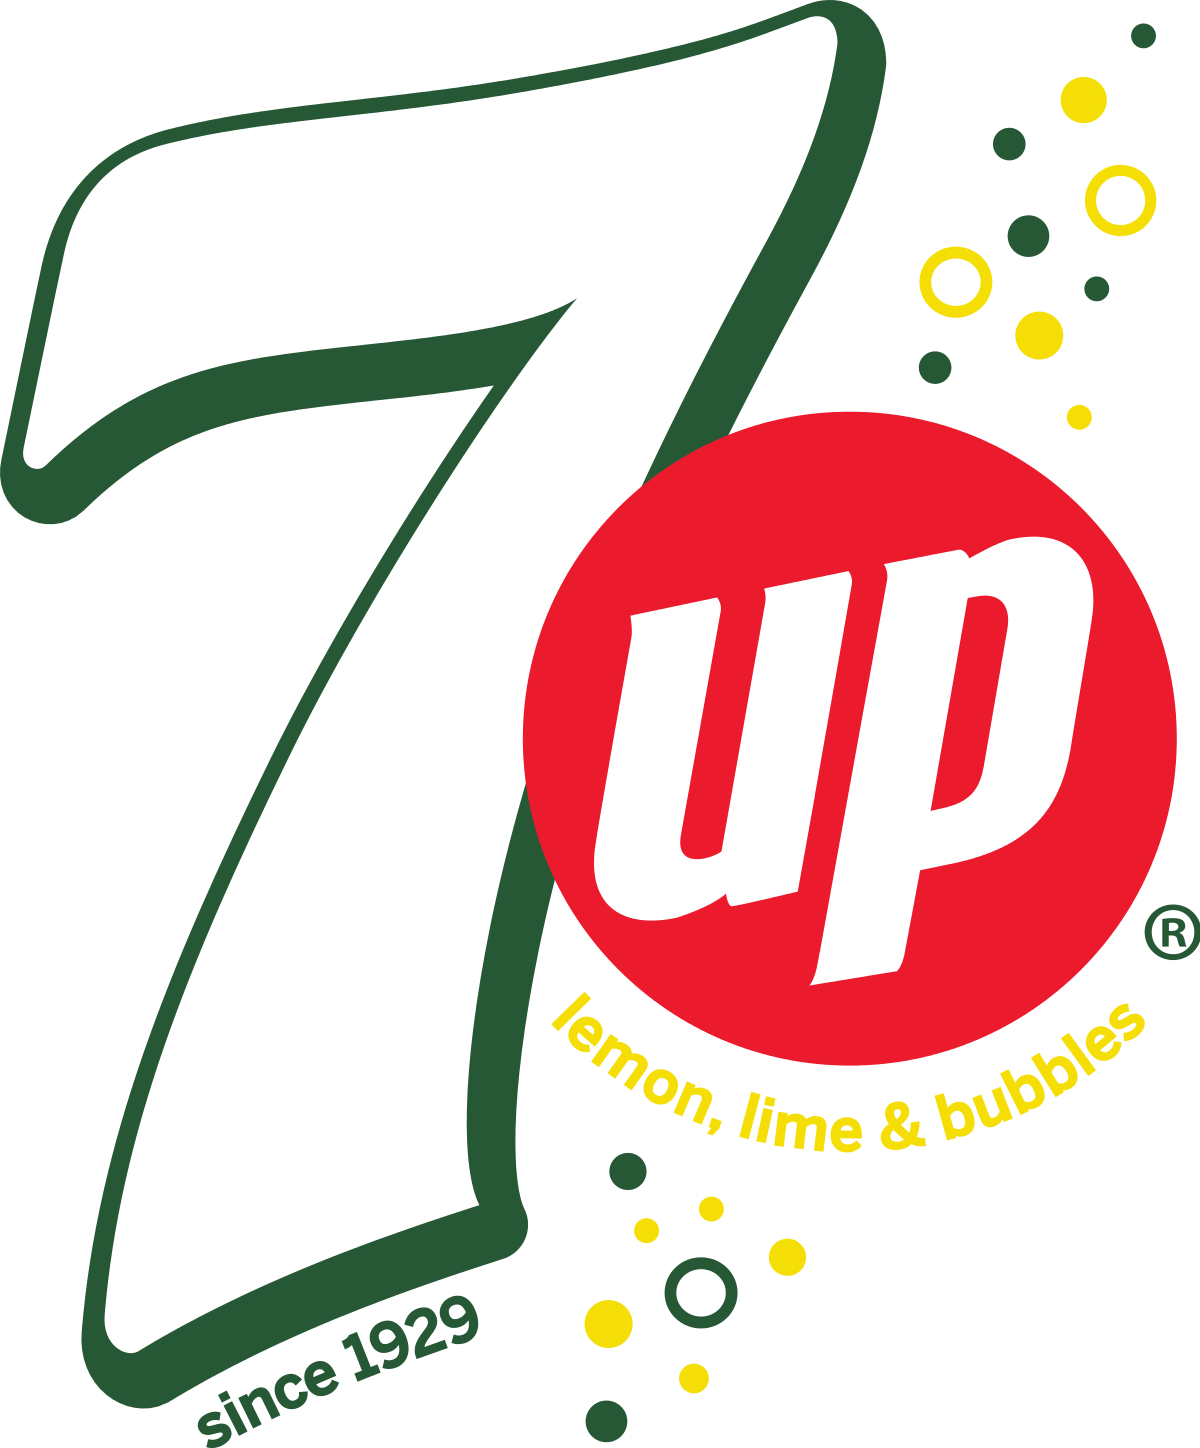 Pepsi 2017 Logo - 7 Up